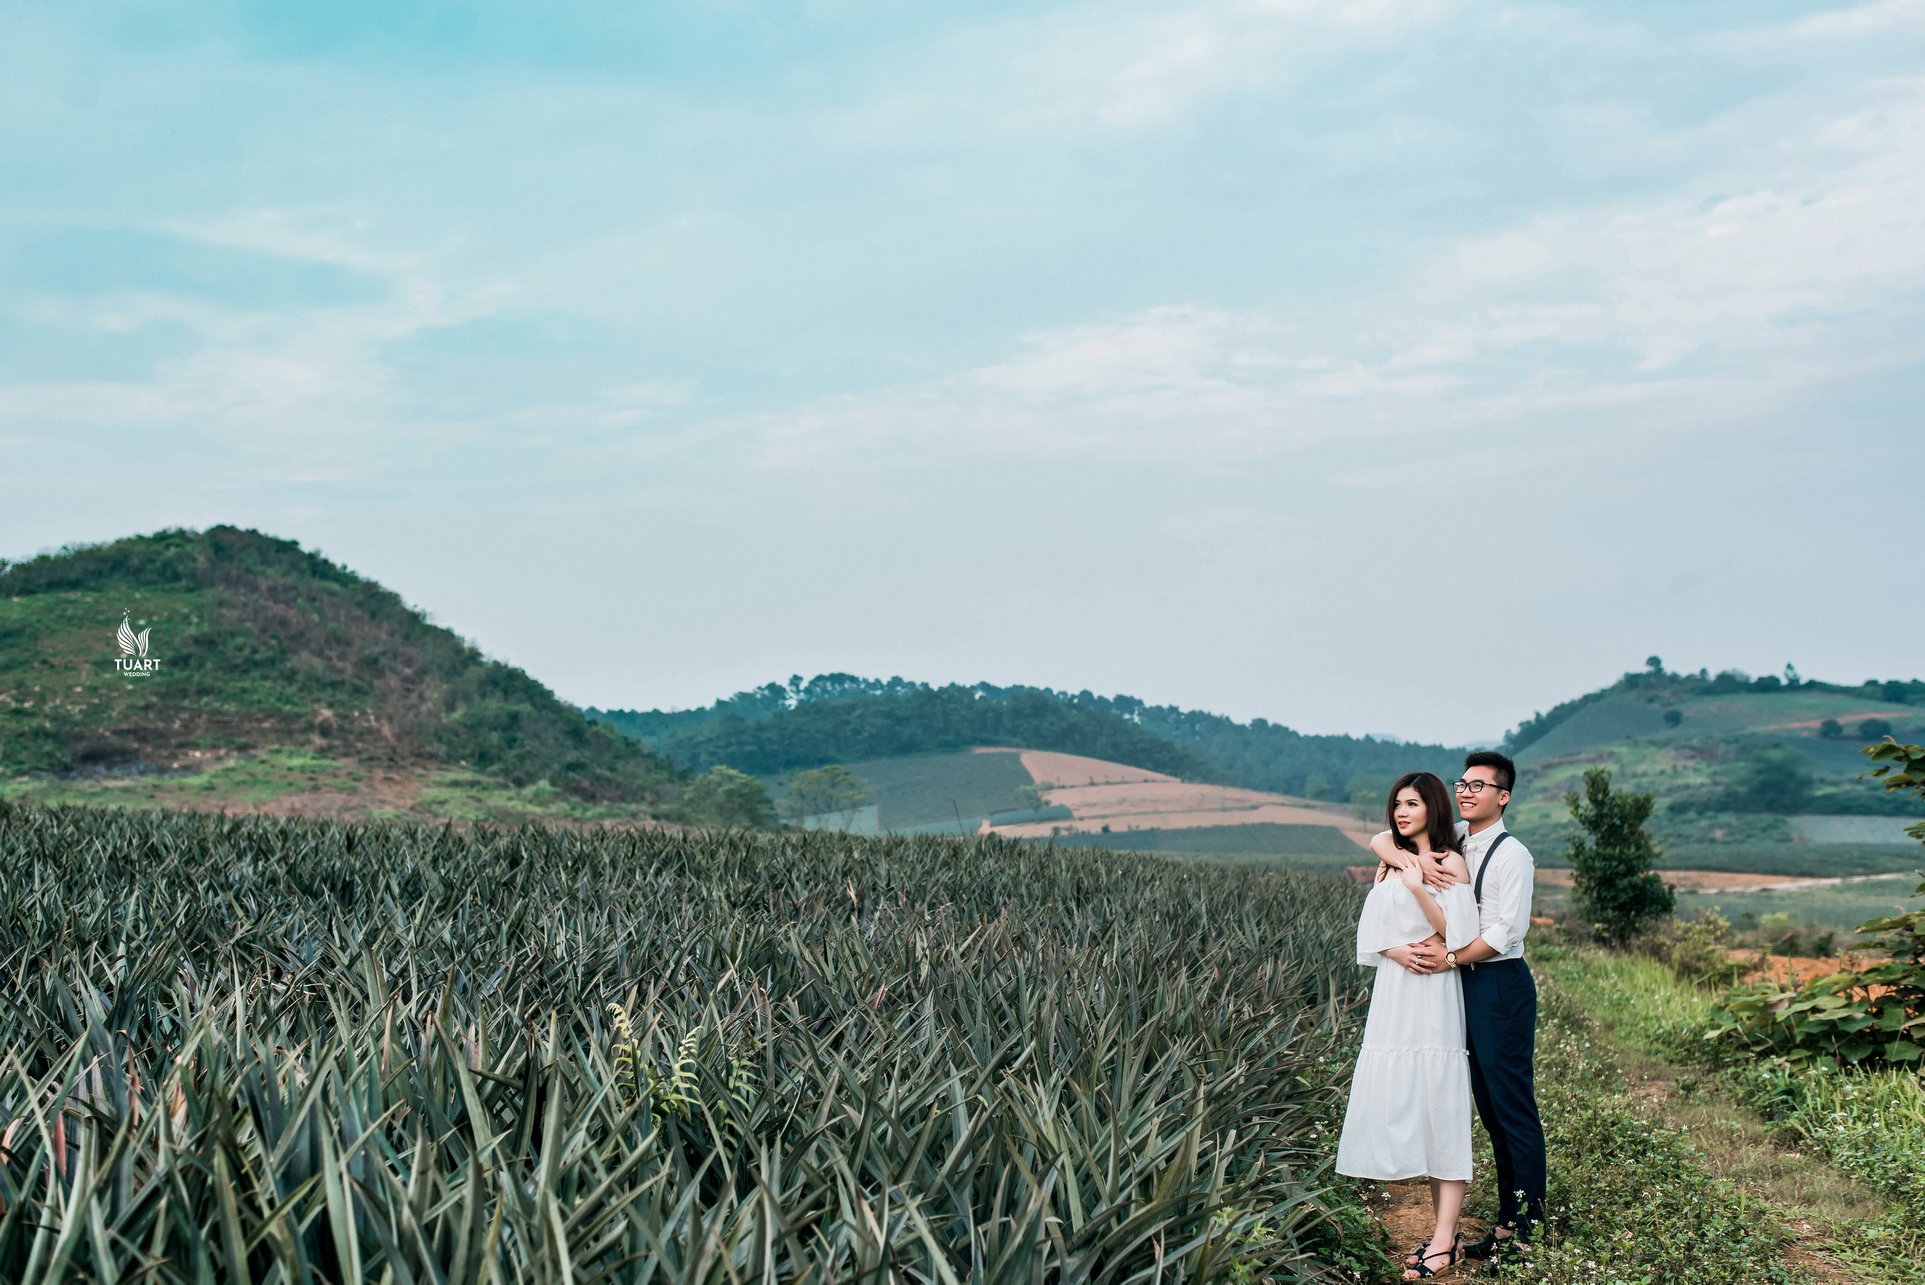 Album chụp ảnh cưới đẹp tại Ninh Bình : Hoàng-Trang 4